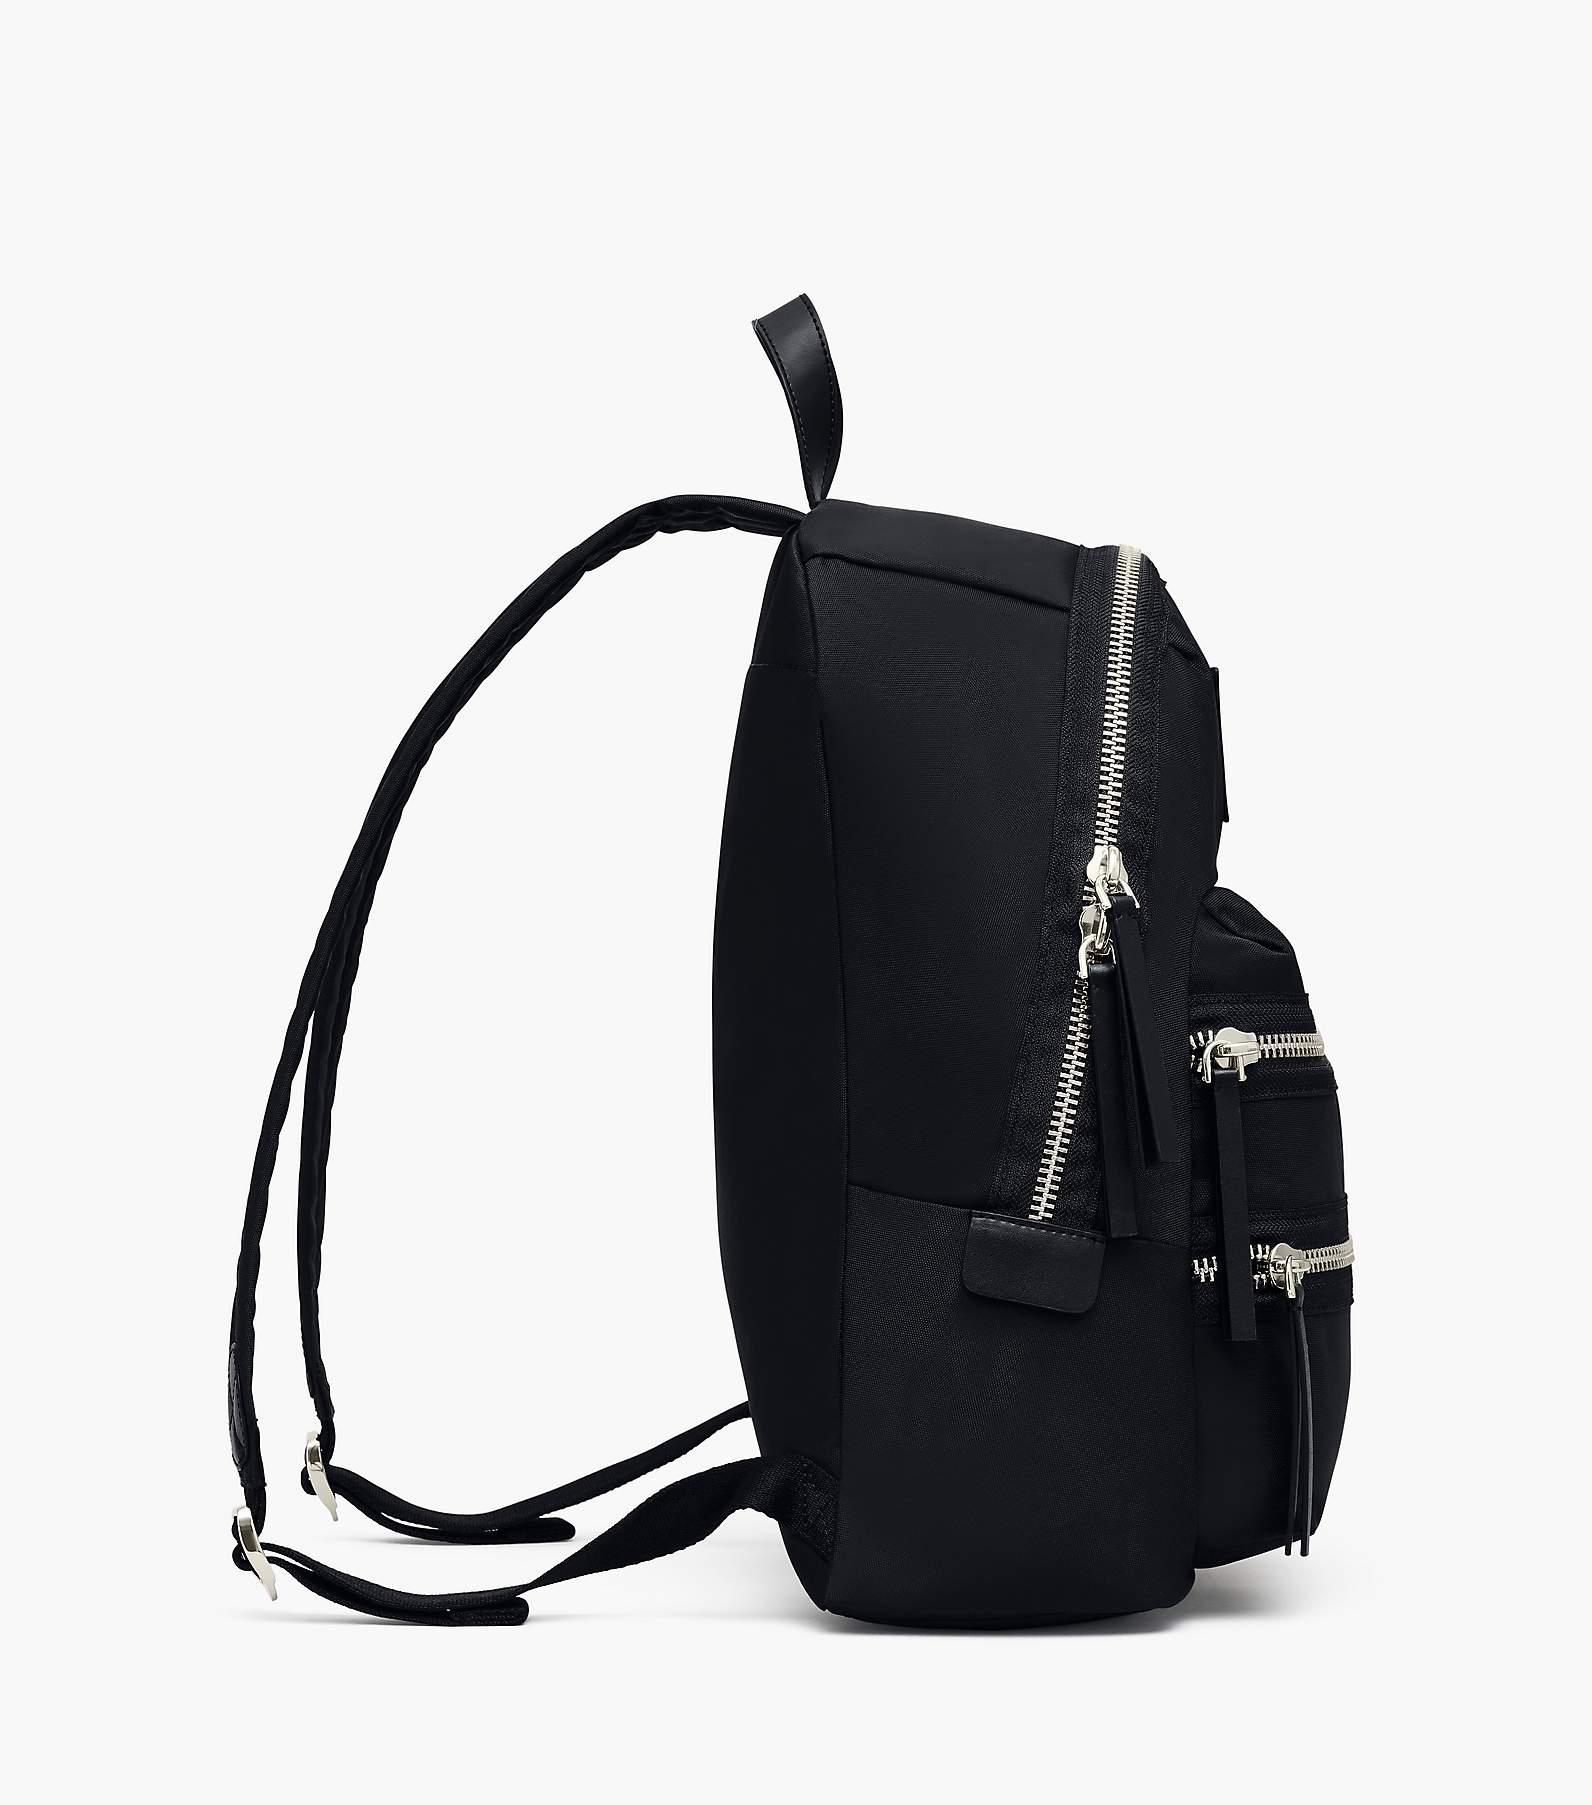 Marc Jacobs The Biker Nylon Medium Black Backpack